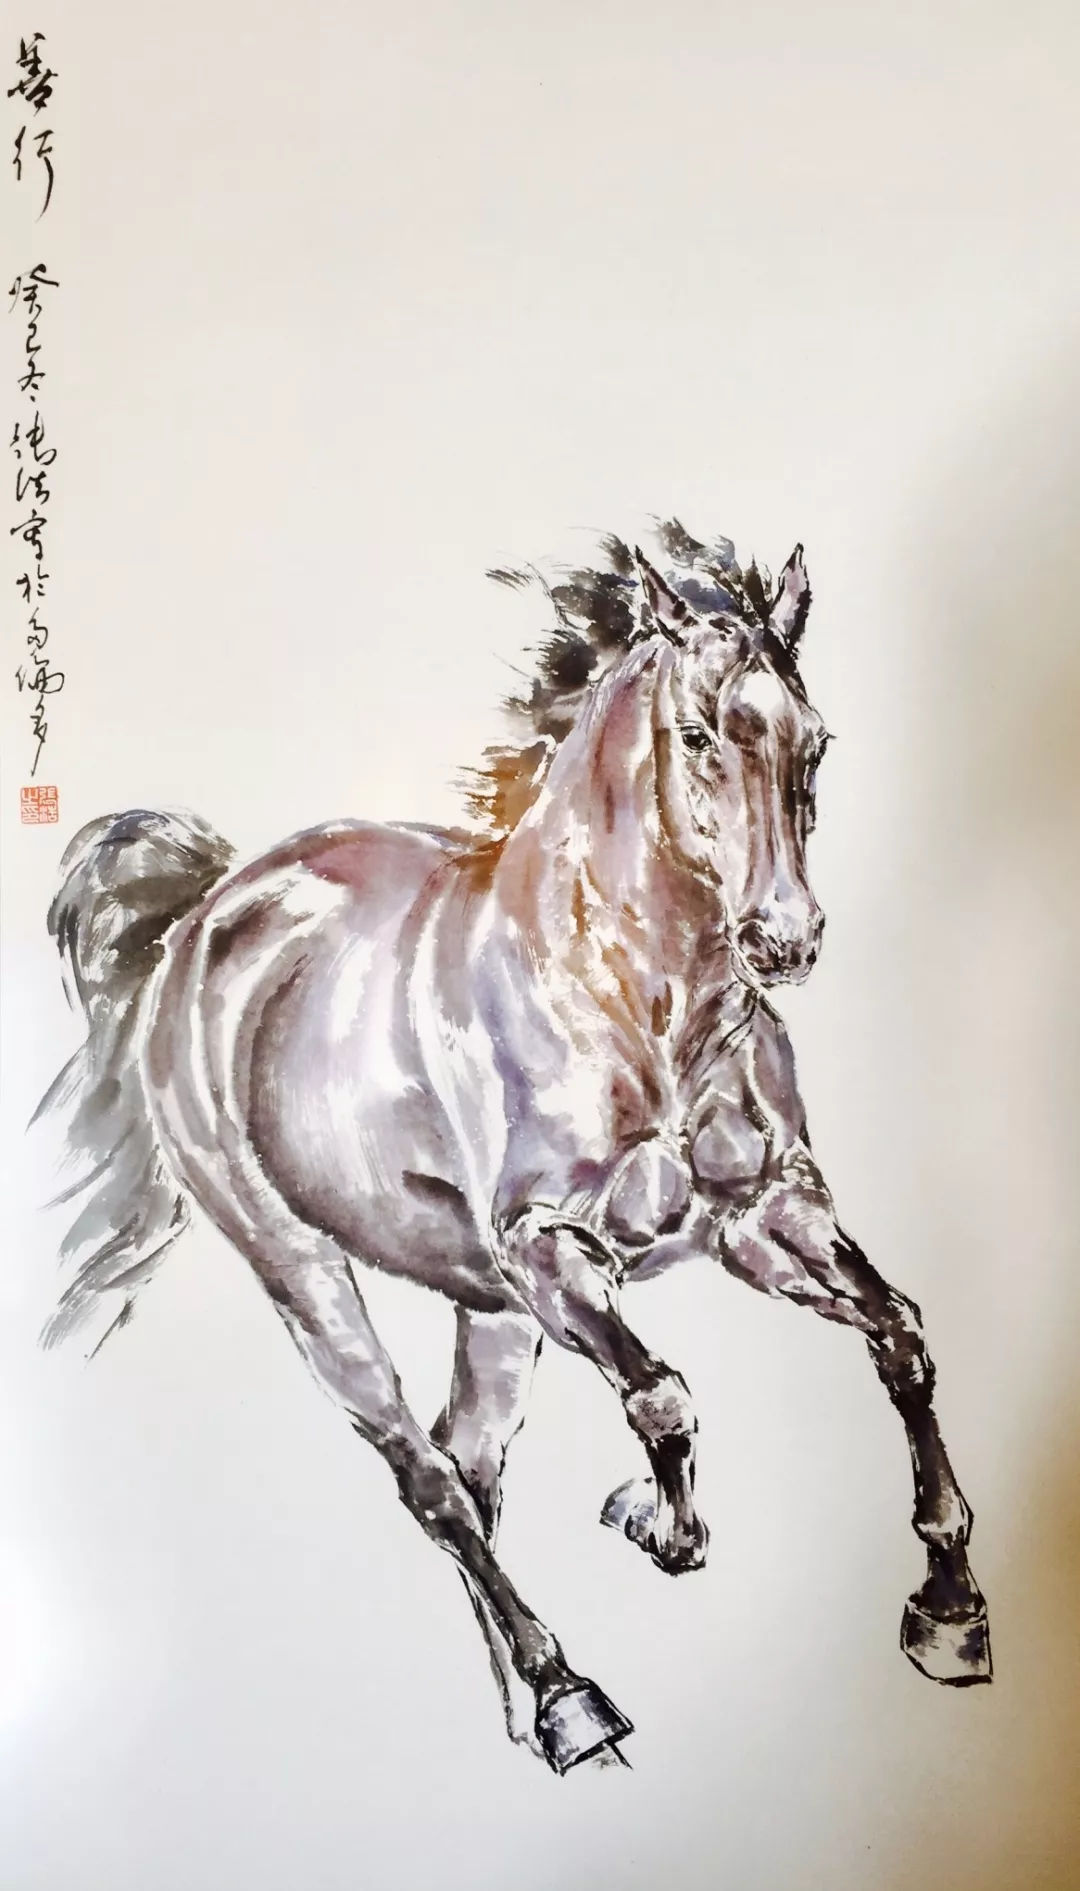 时至今日,我们又从张浩先生的作品中,读到了当代画马艺术的一种新境界